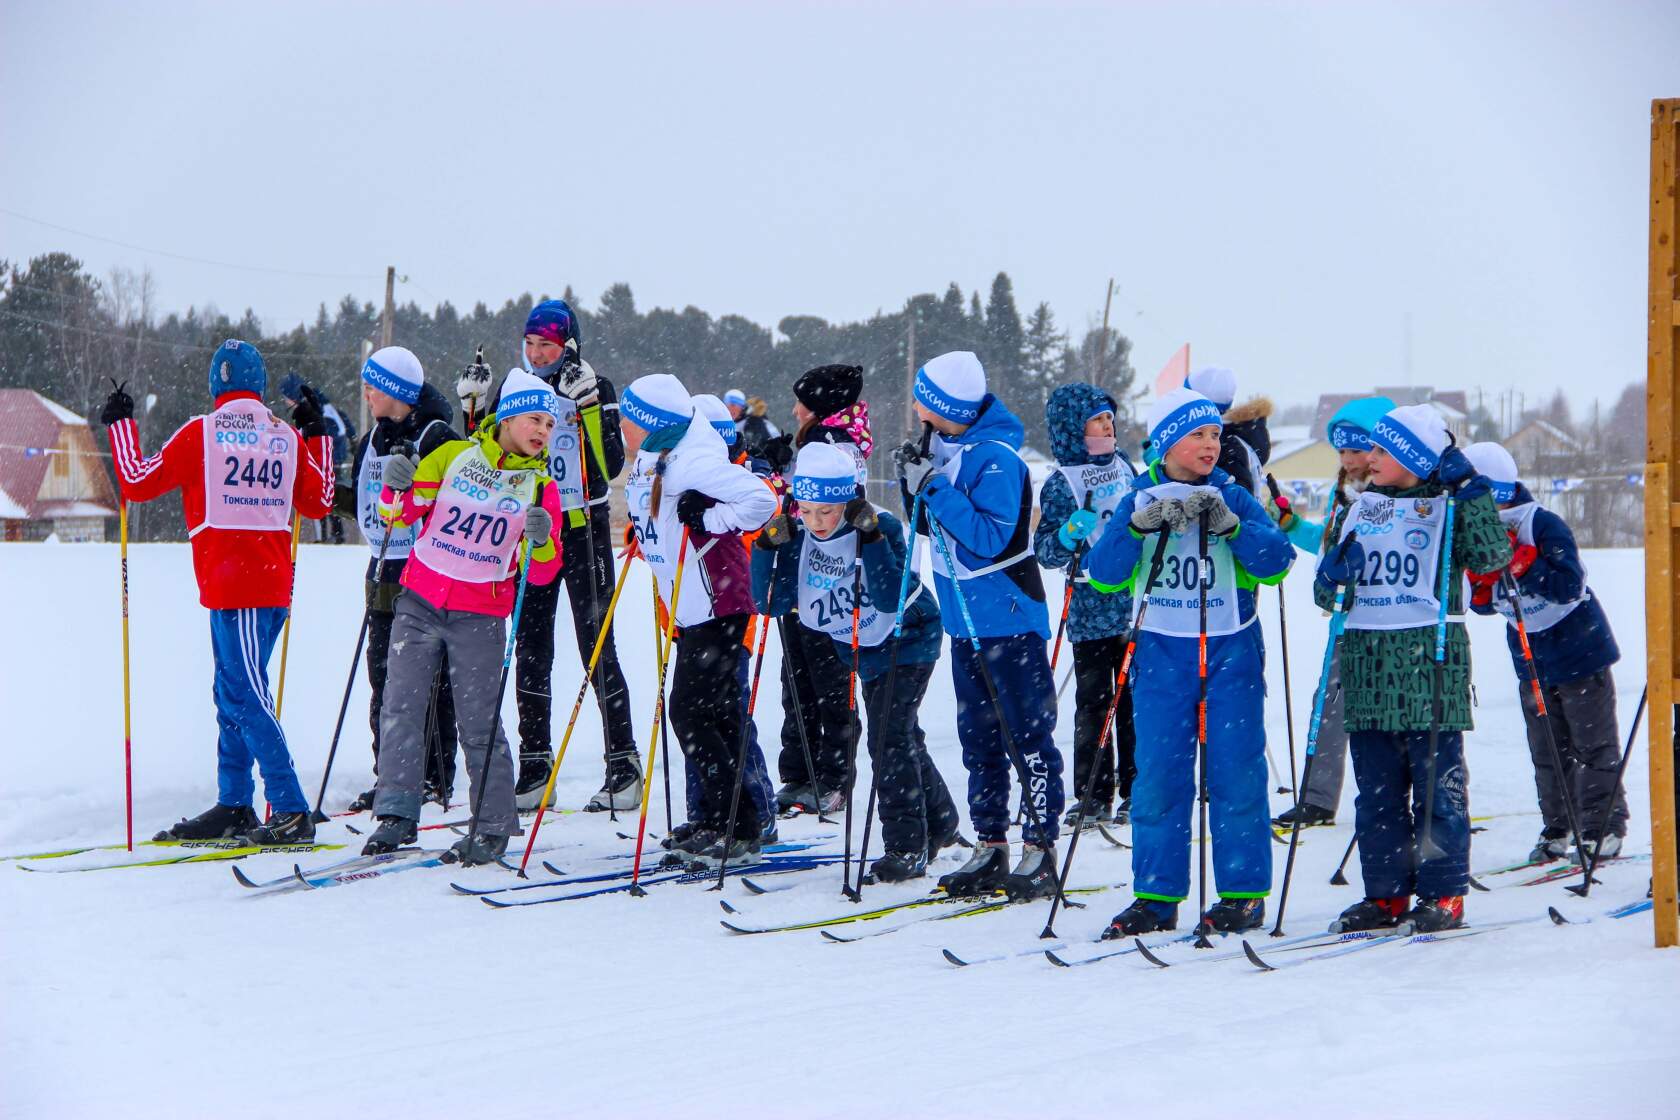 6 марта на лыжной базе в селе Парабель пройдет всероссийская массовая лыжная гонка «Лыжня России-2021».